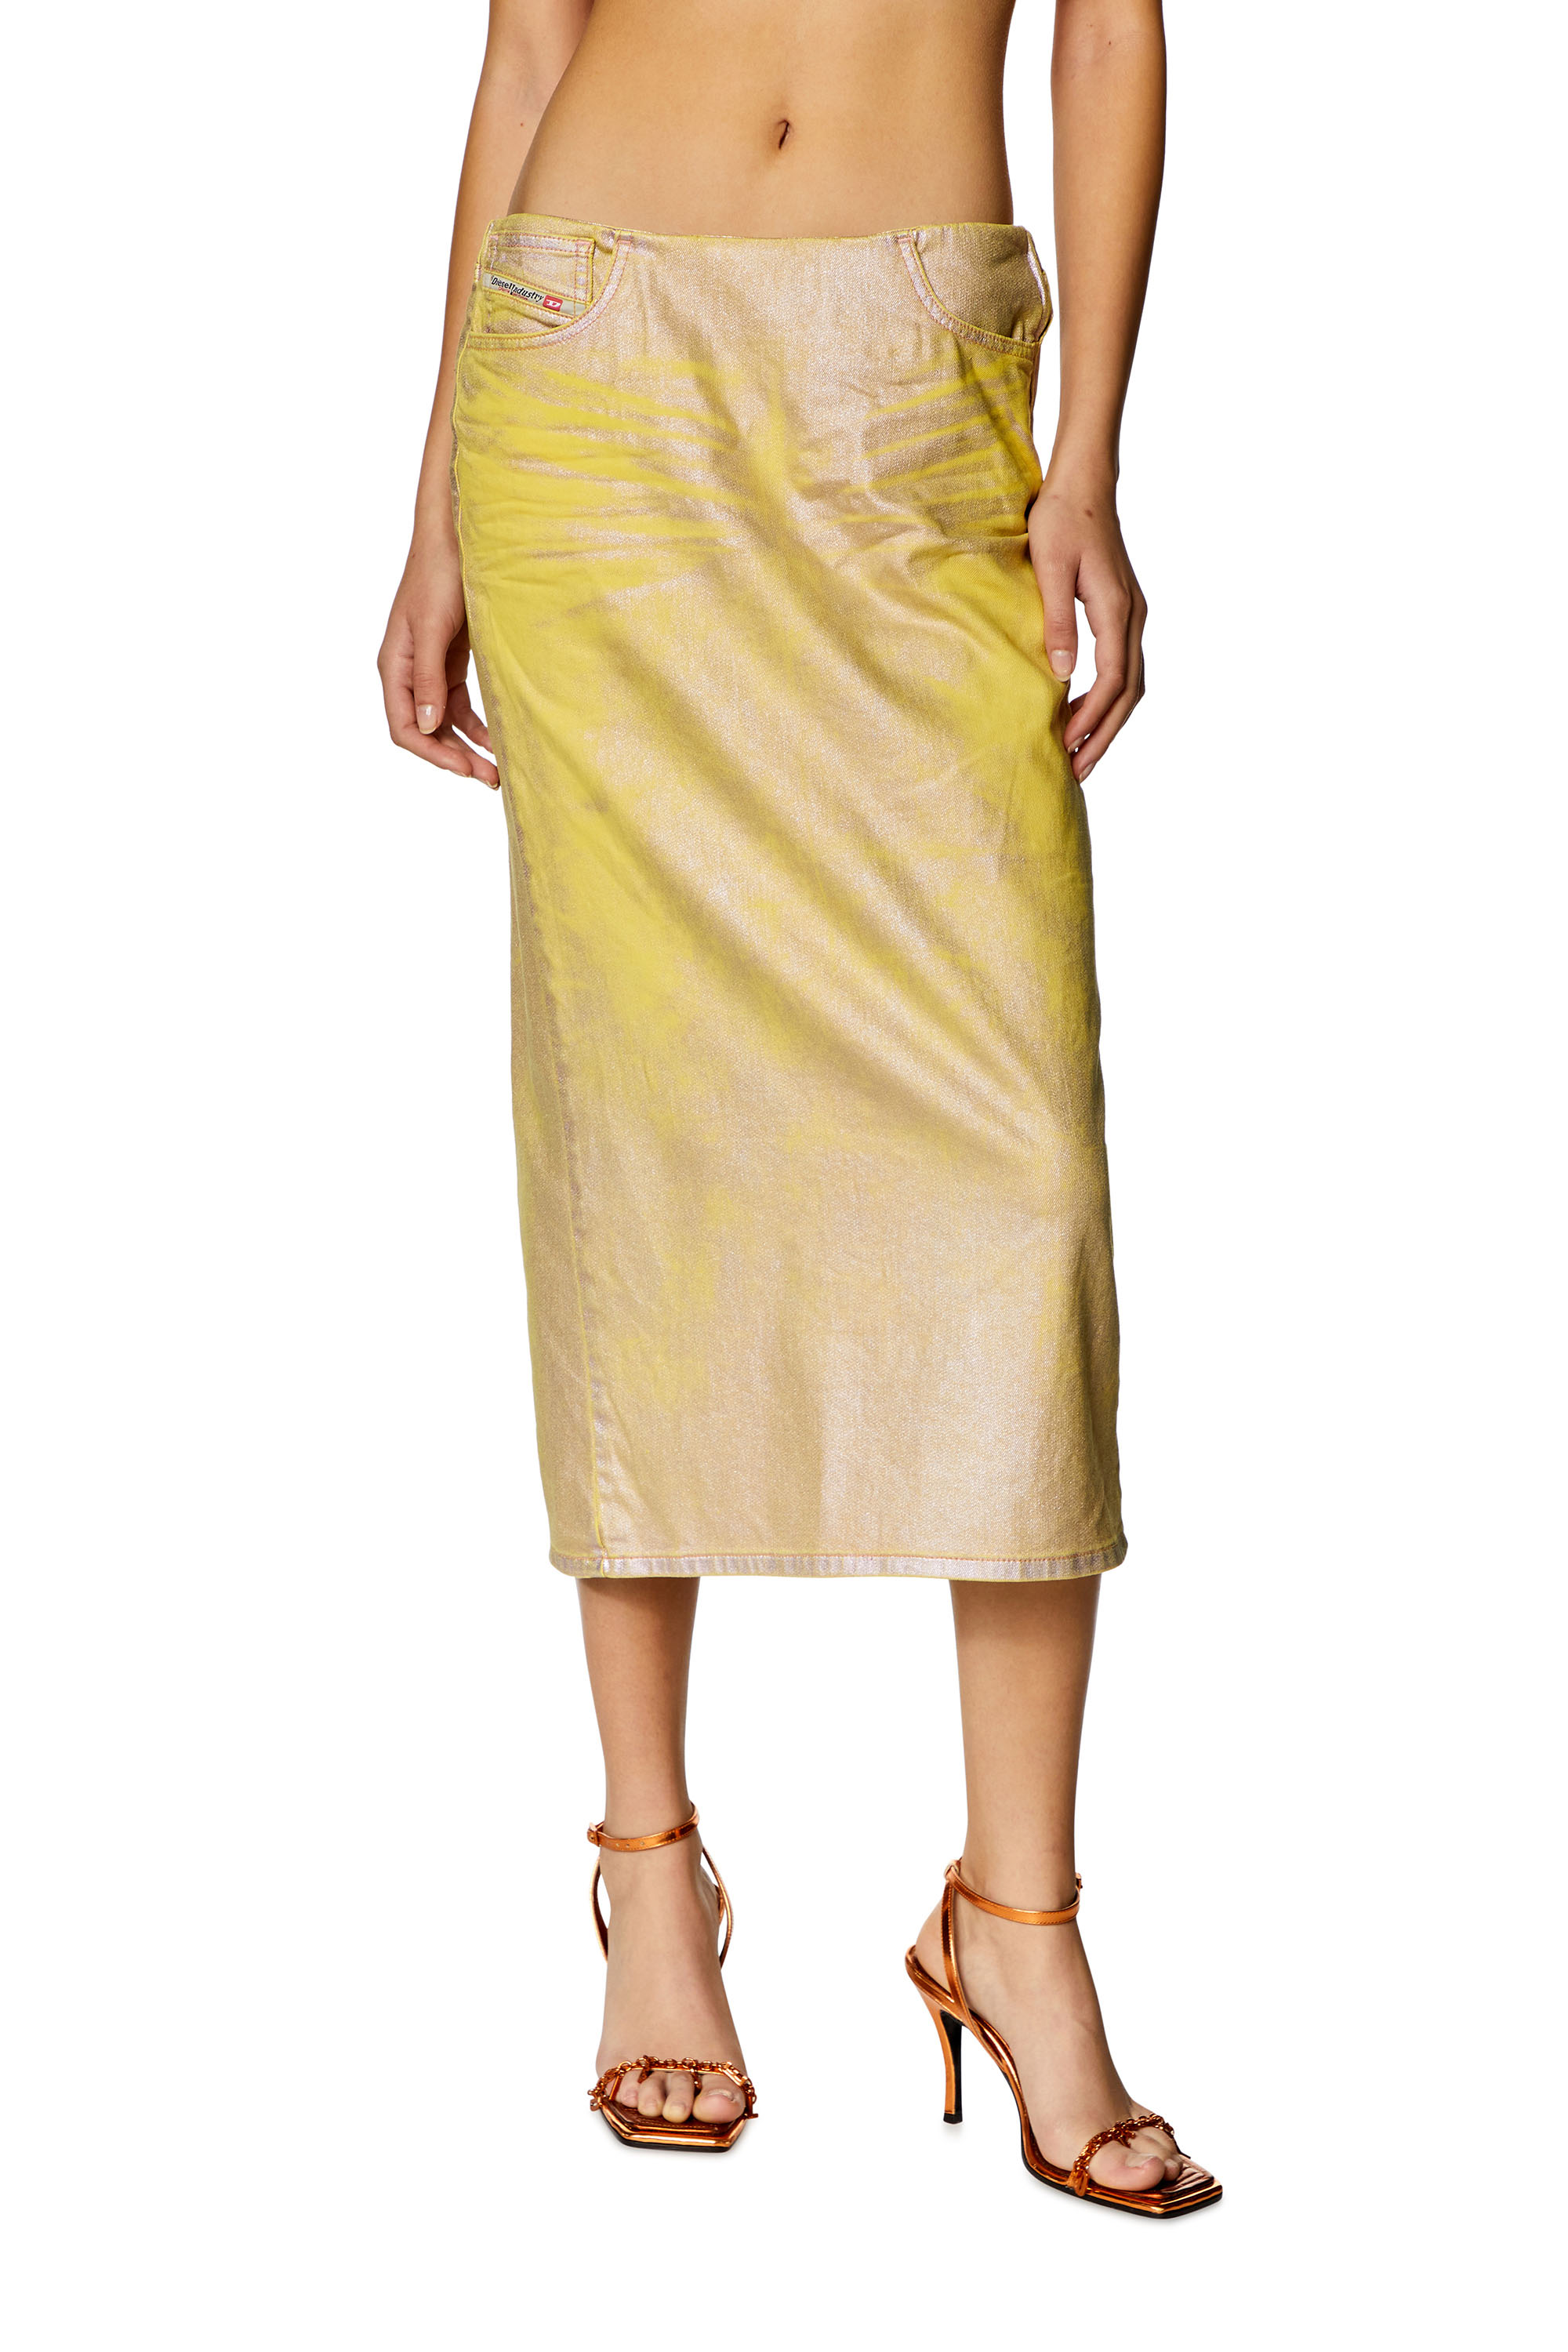 Diesel - DE-PRA-S2, Woman Skirt in bicolour laminated denim in Yellow - Image 1